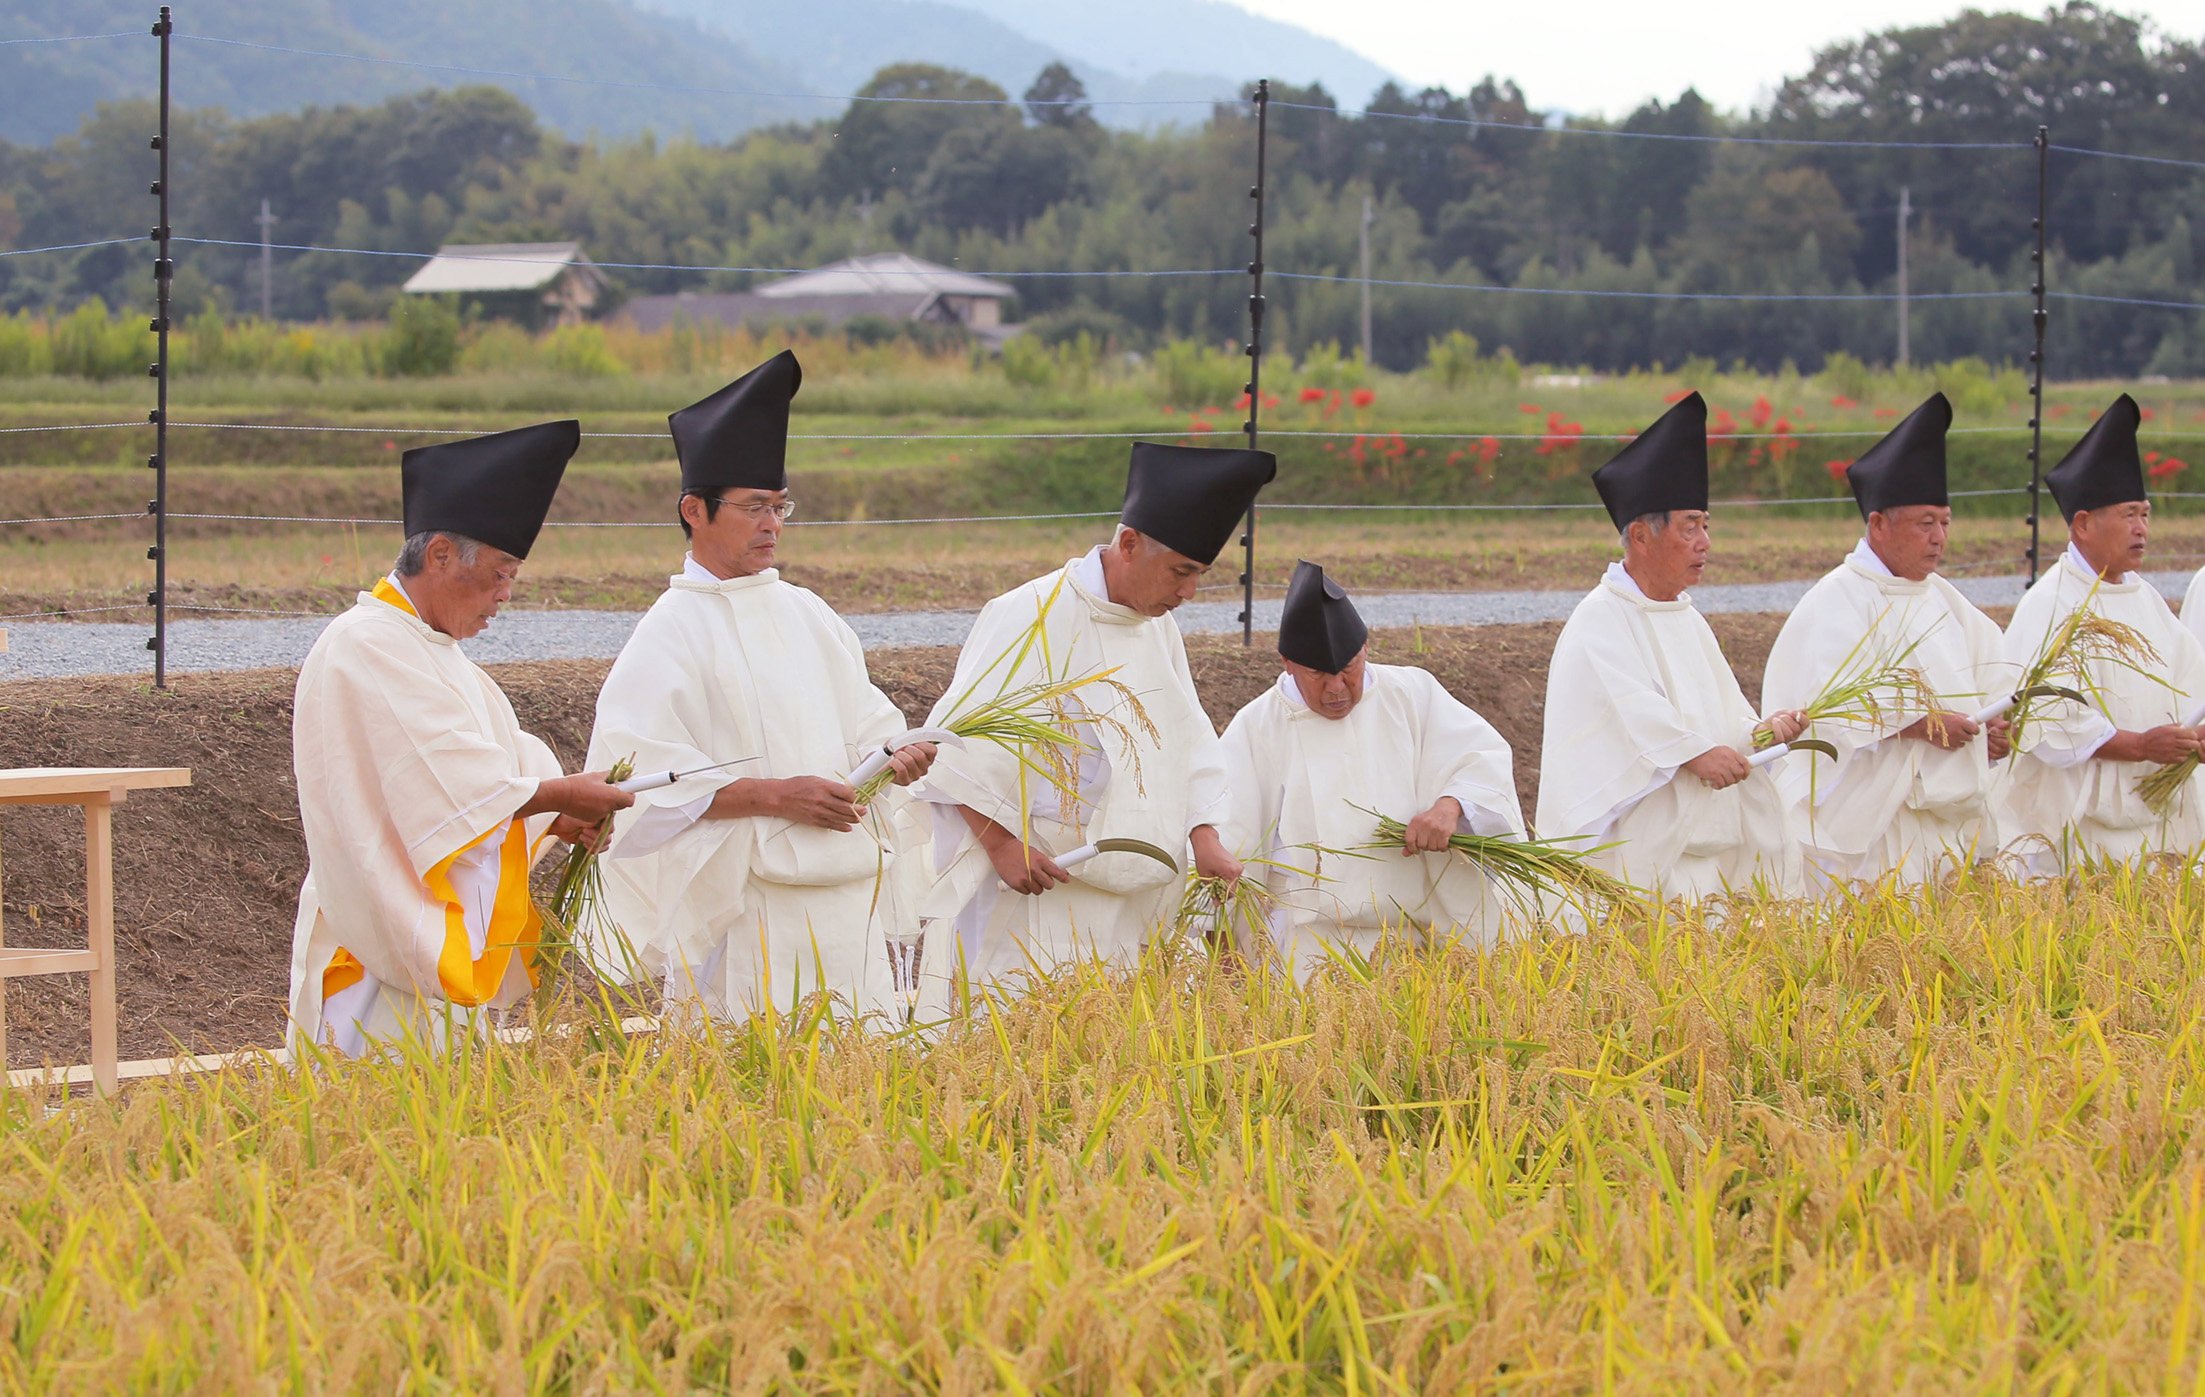 大嘗祭のコメ収穫、知事出席は「政教分離違反」　京都府に住民監査請求